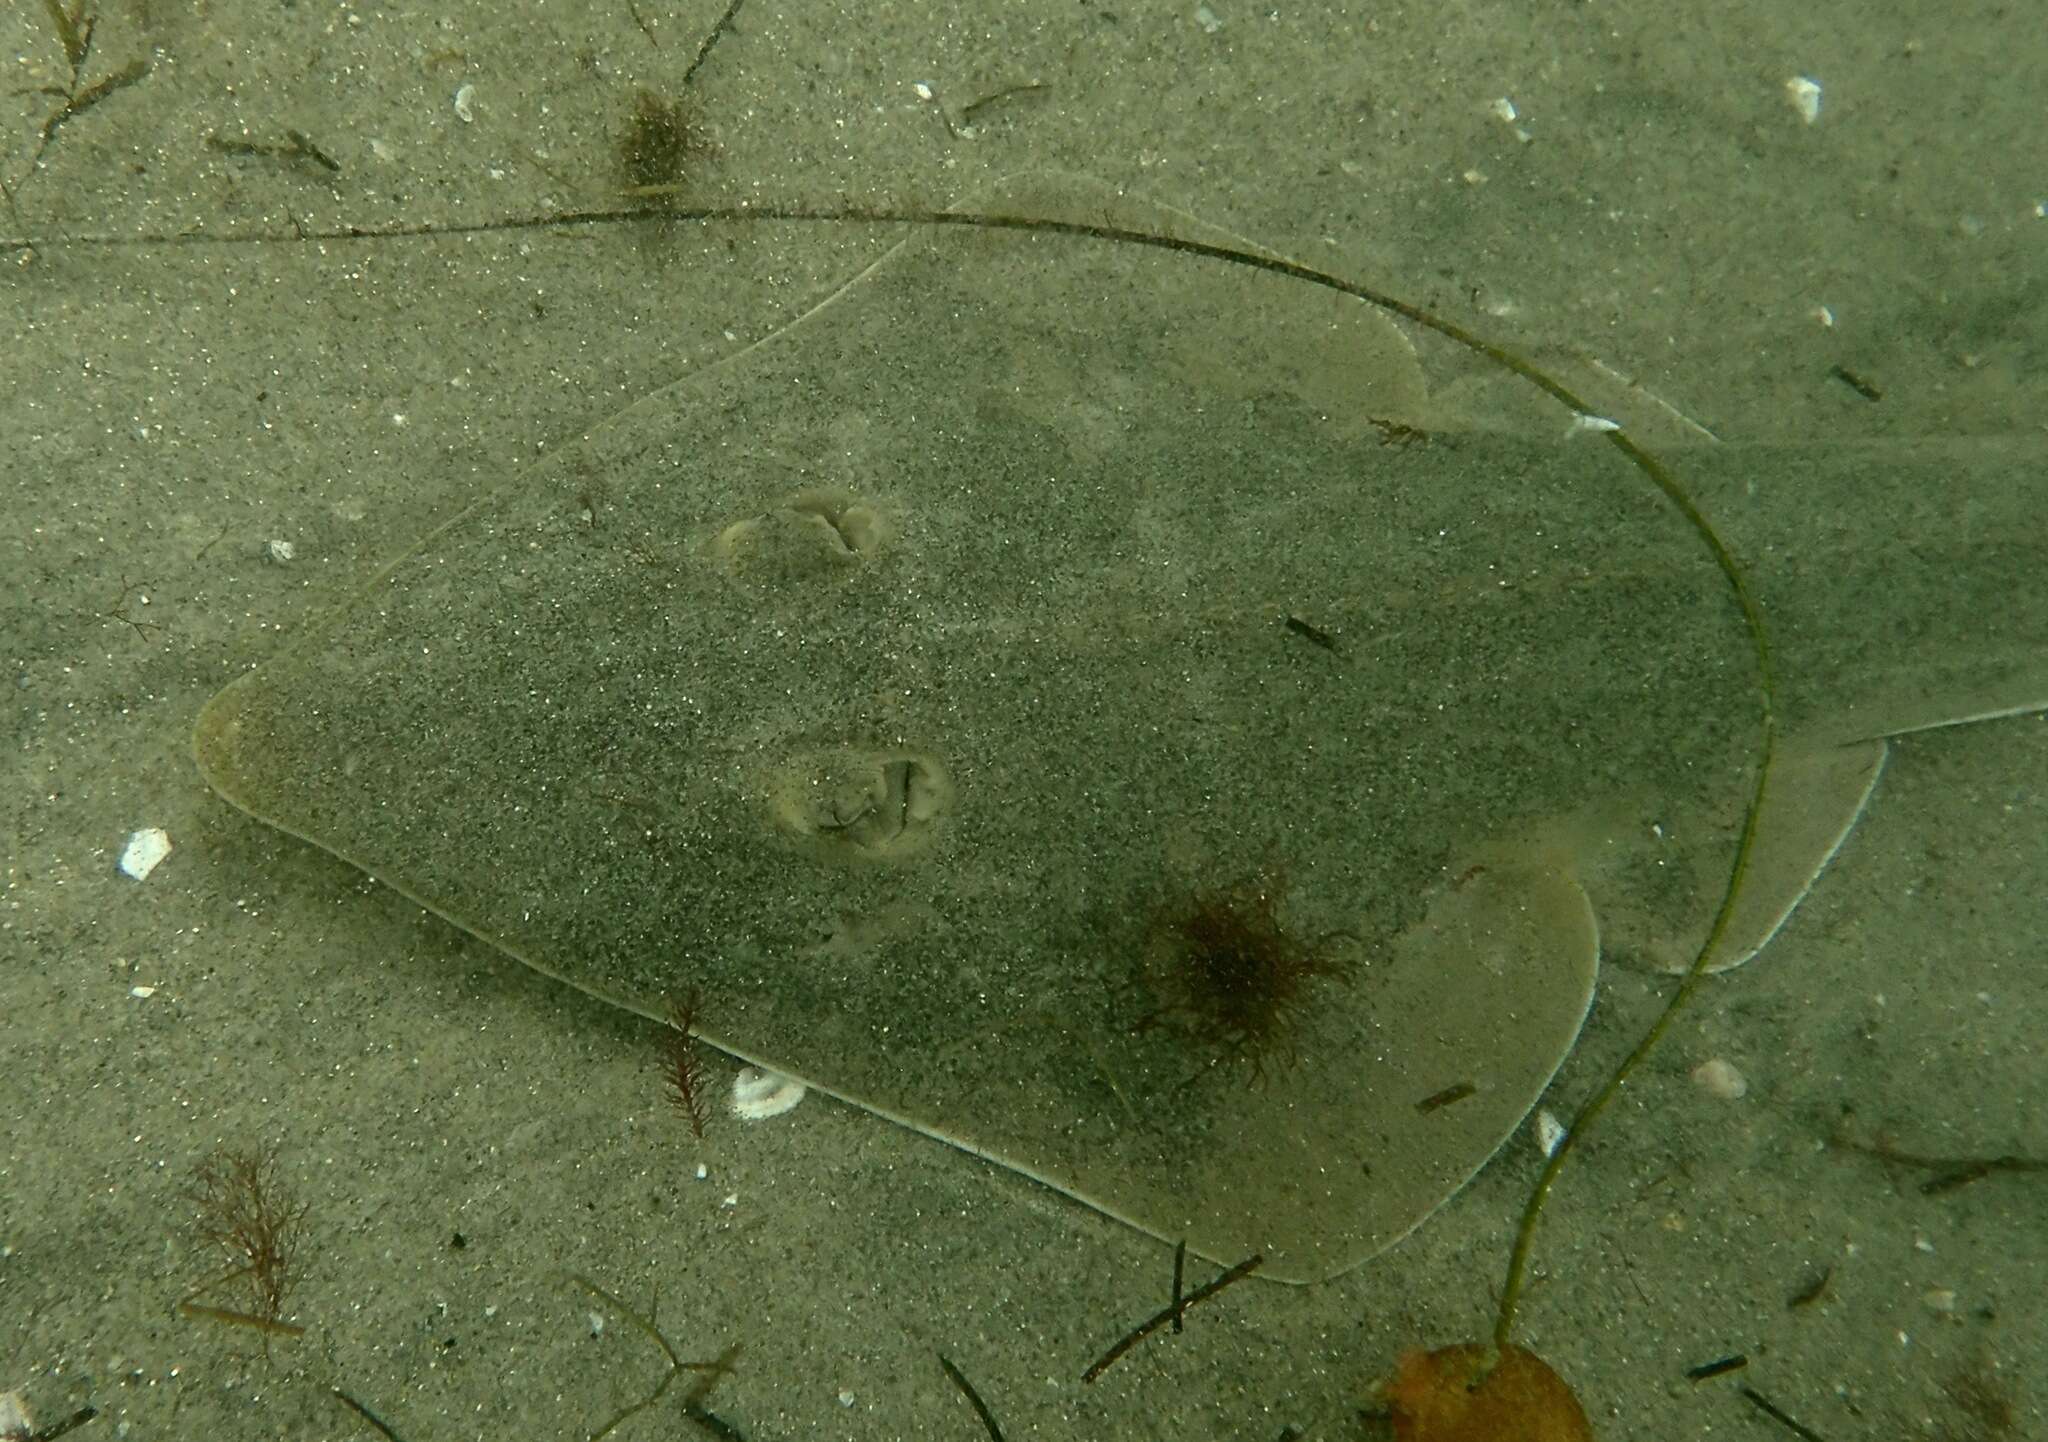 Image of Guitarfish